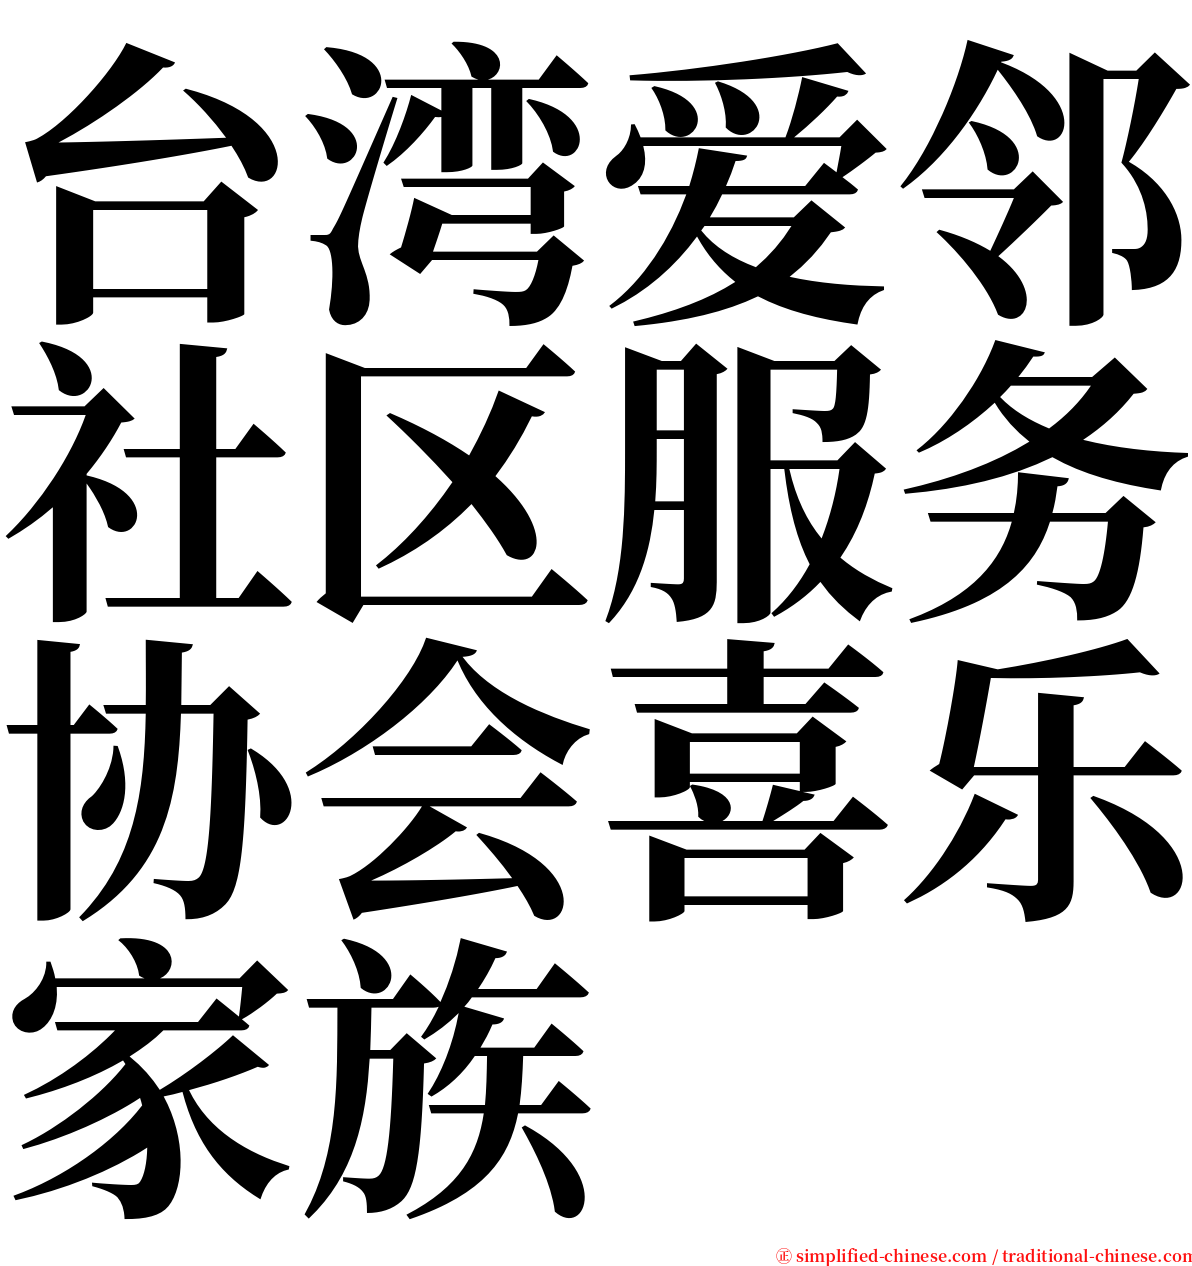 台湾爱邻社区服务协会喜乐家族 serif font